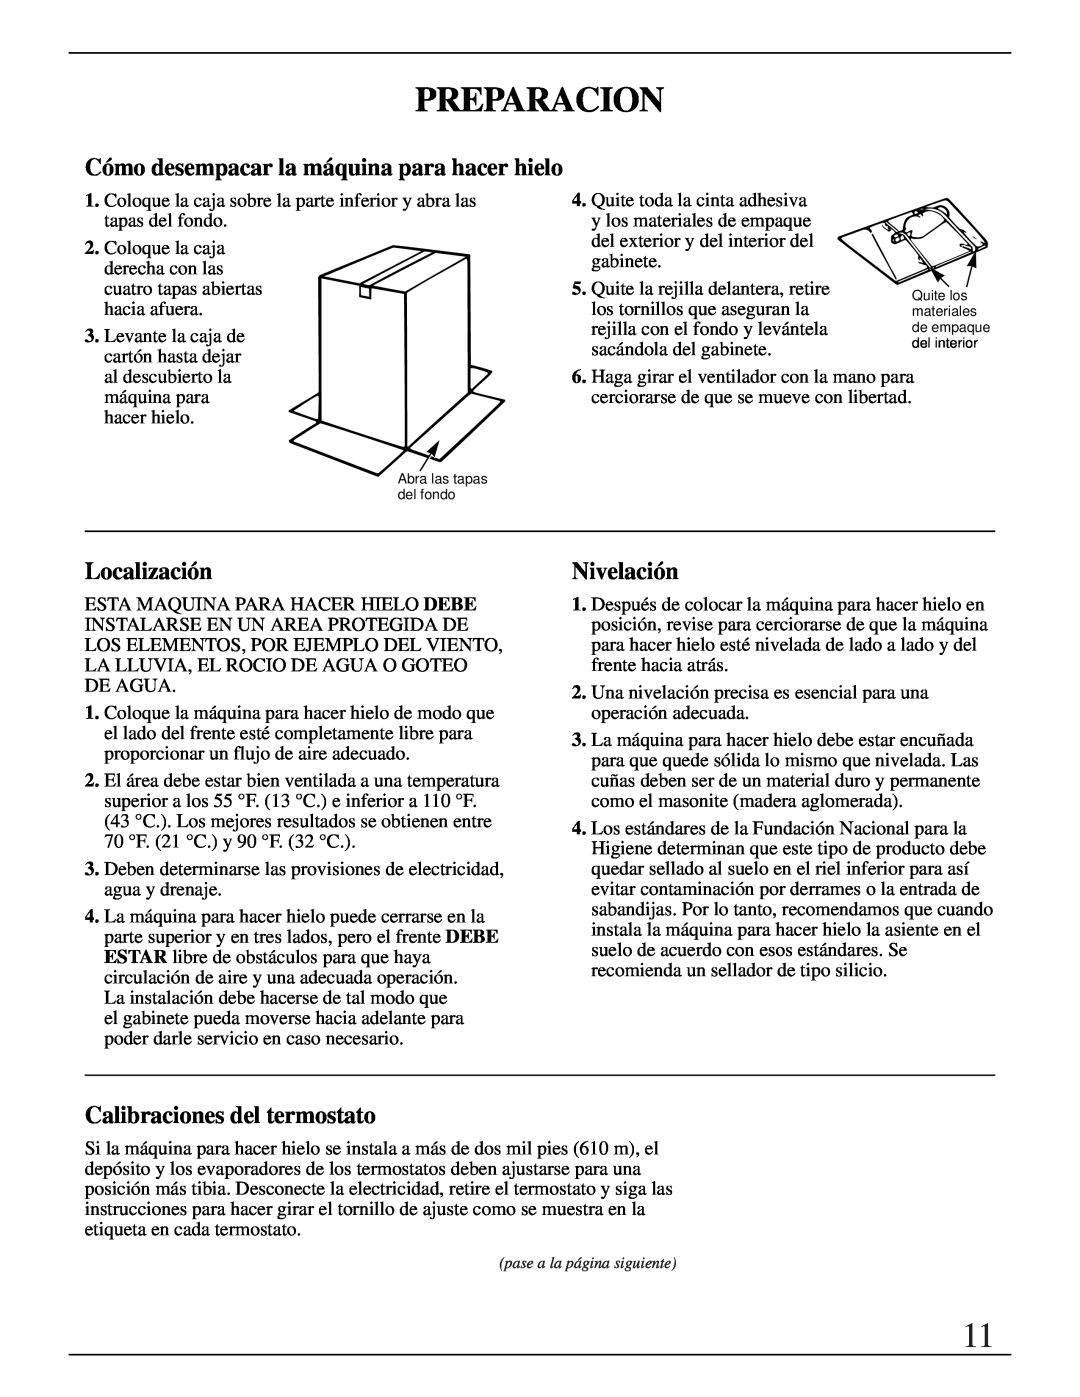 GE Monogram ZDIB50 installation instructions Preparacion, Localización, Nivelación, Calibraciones del termostato 